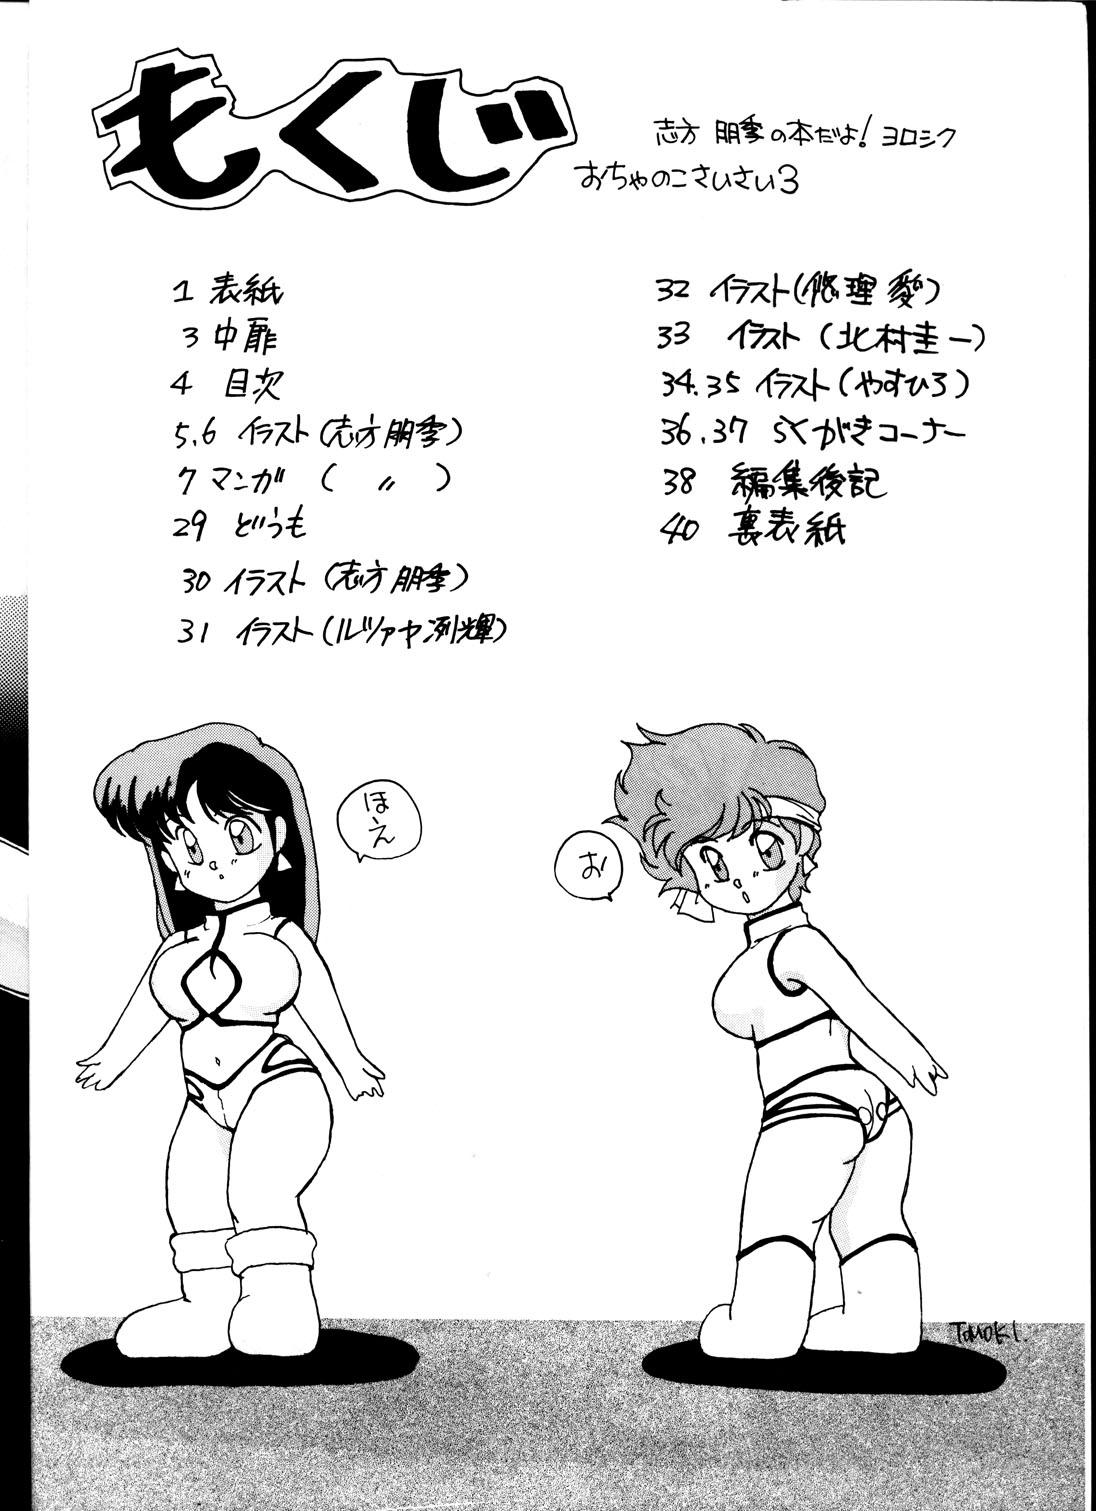 Young Old Ocha no Ko Saisai 3 - Dirty pair Cute - Page 4